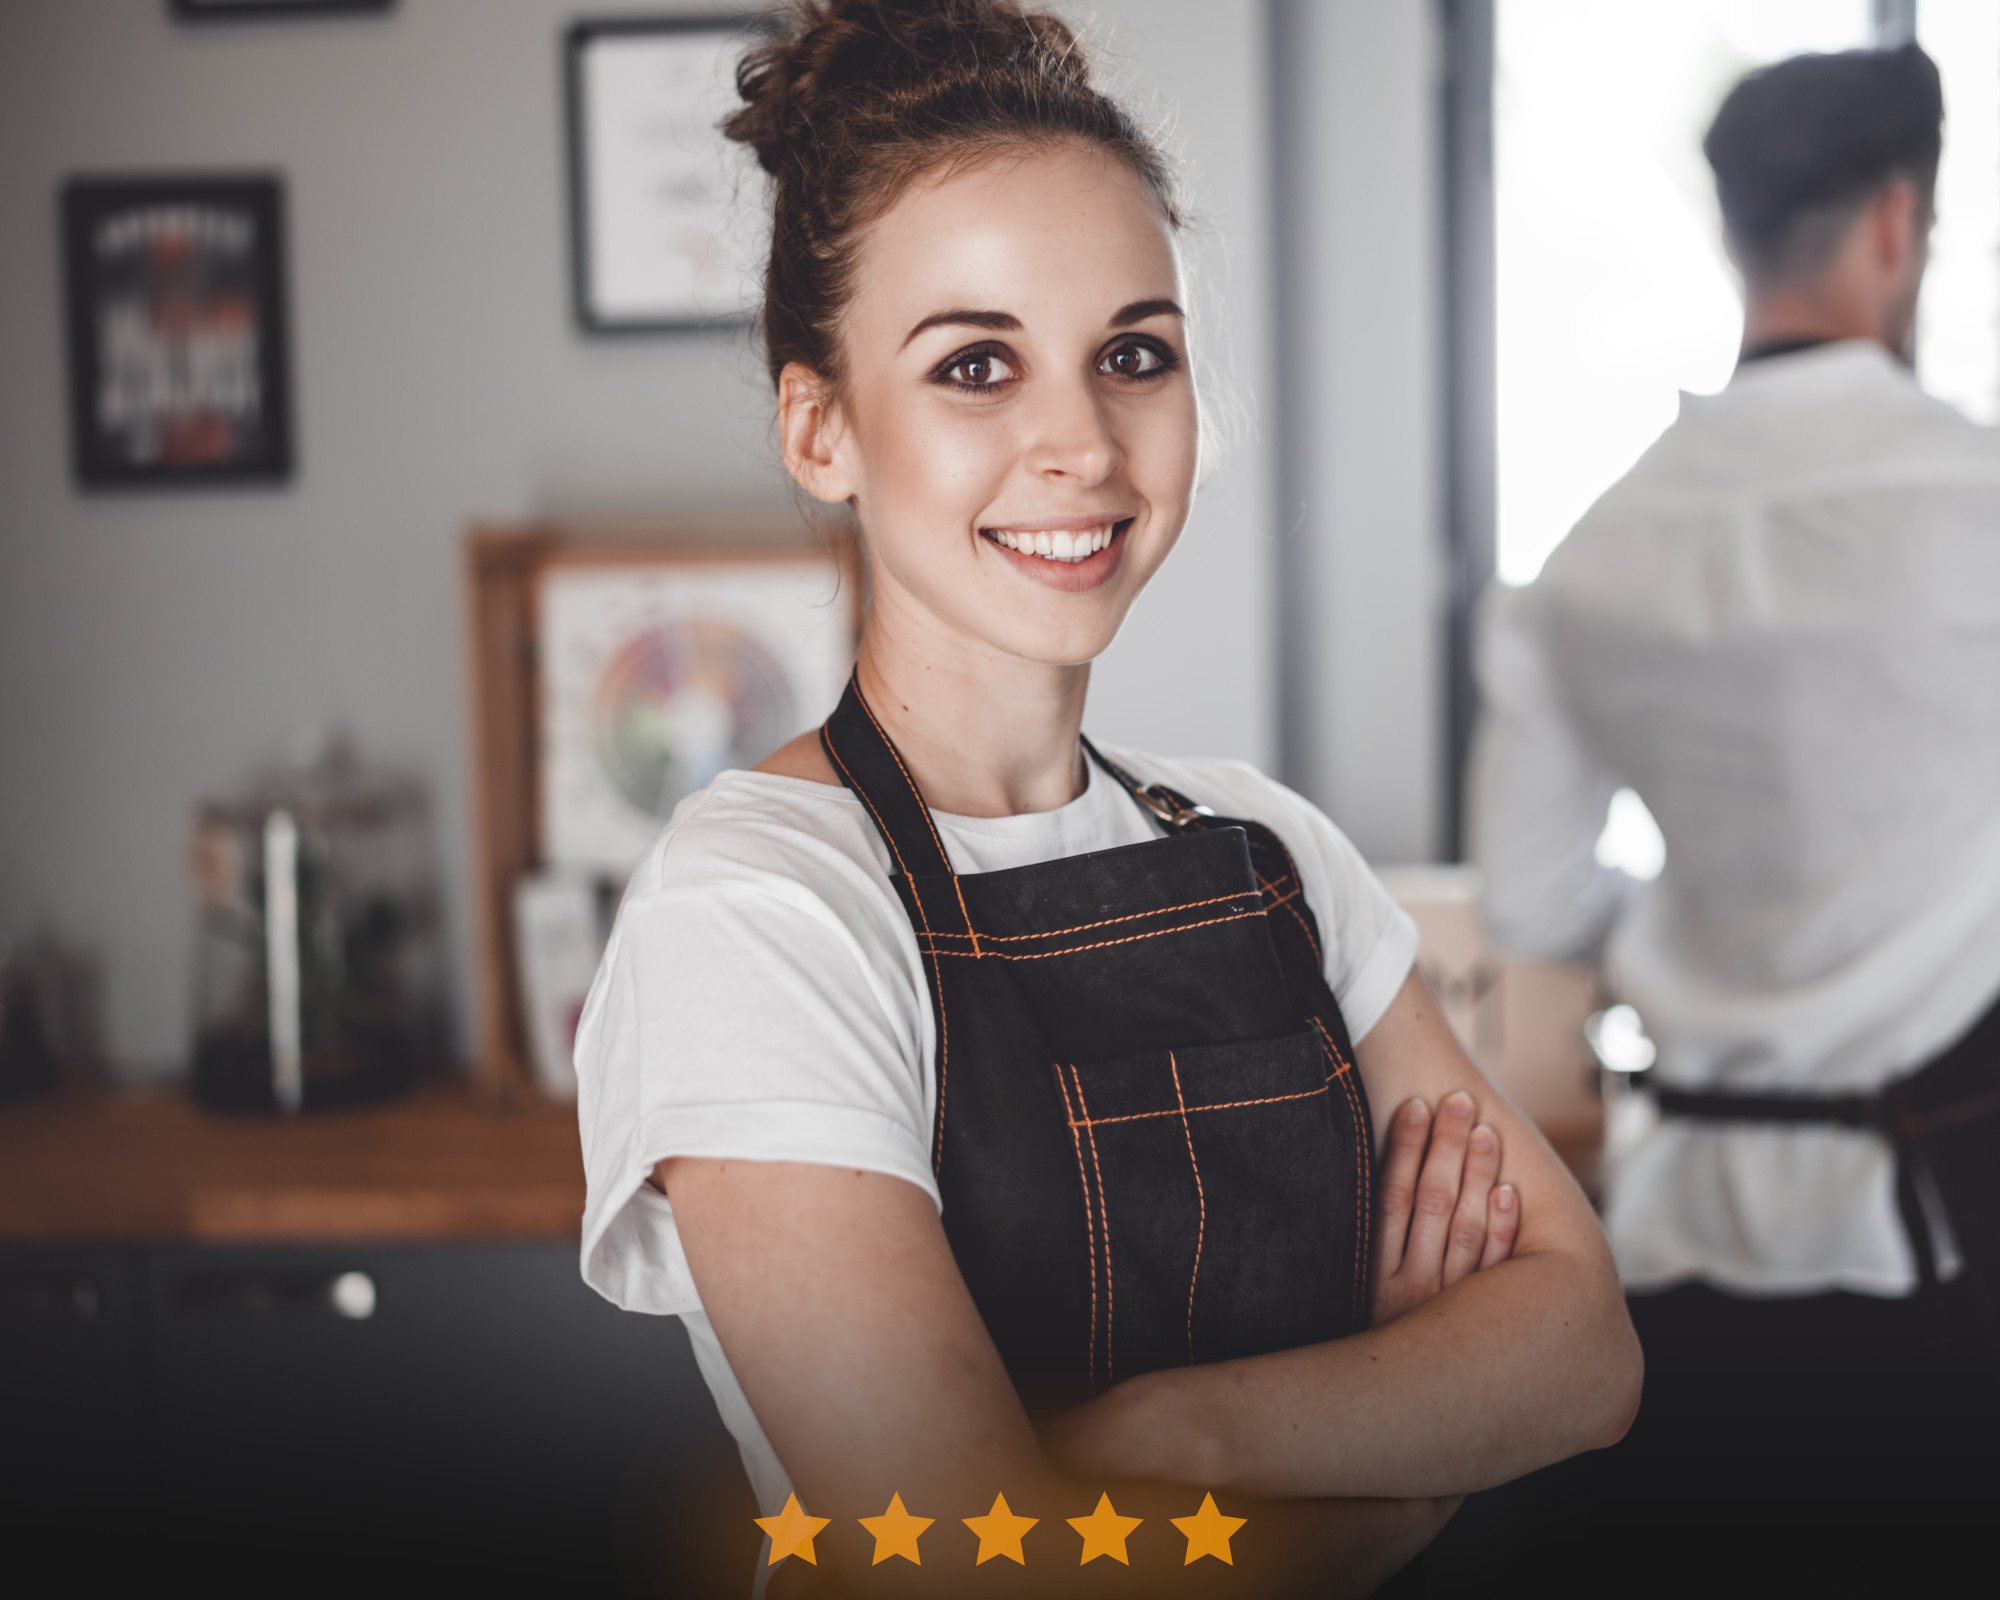 Serveuse souriante en tablier devant un café avec des étoiles de satisfaction client.